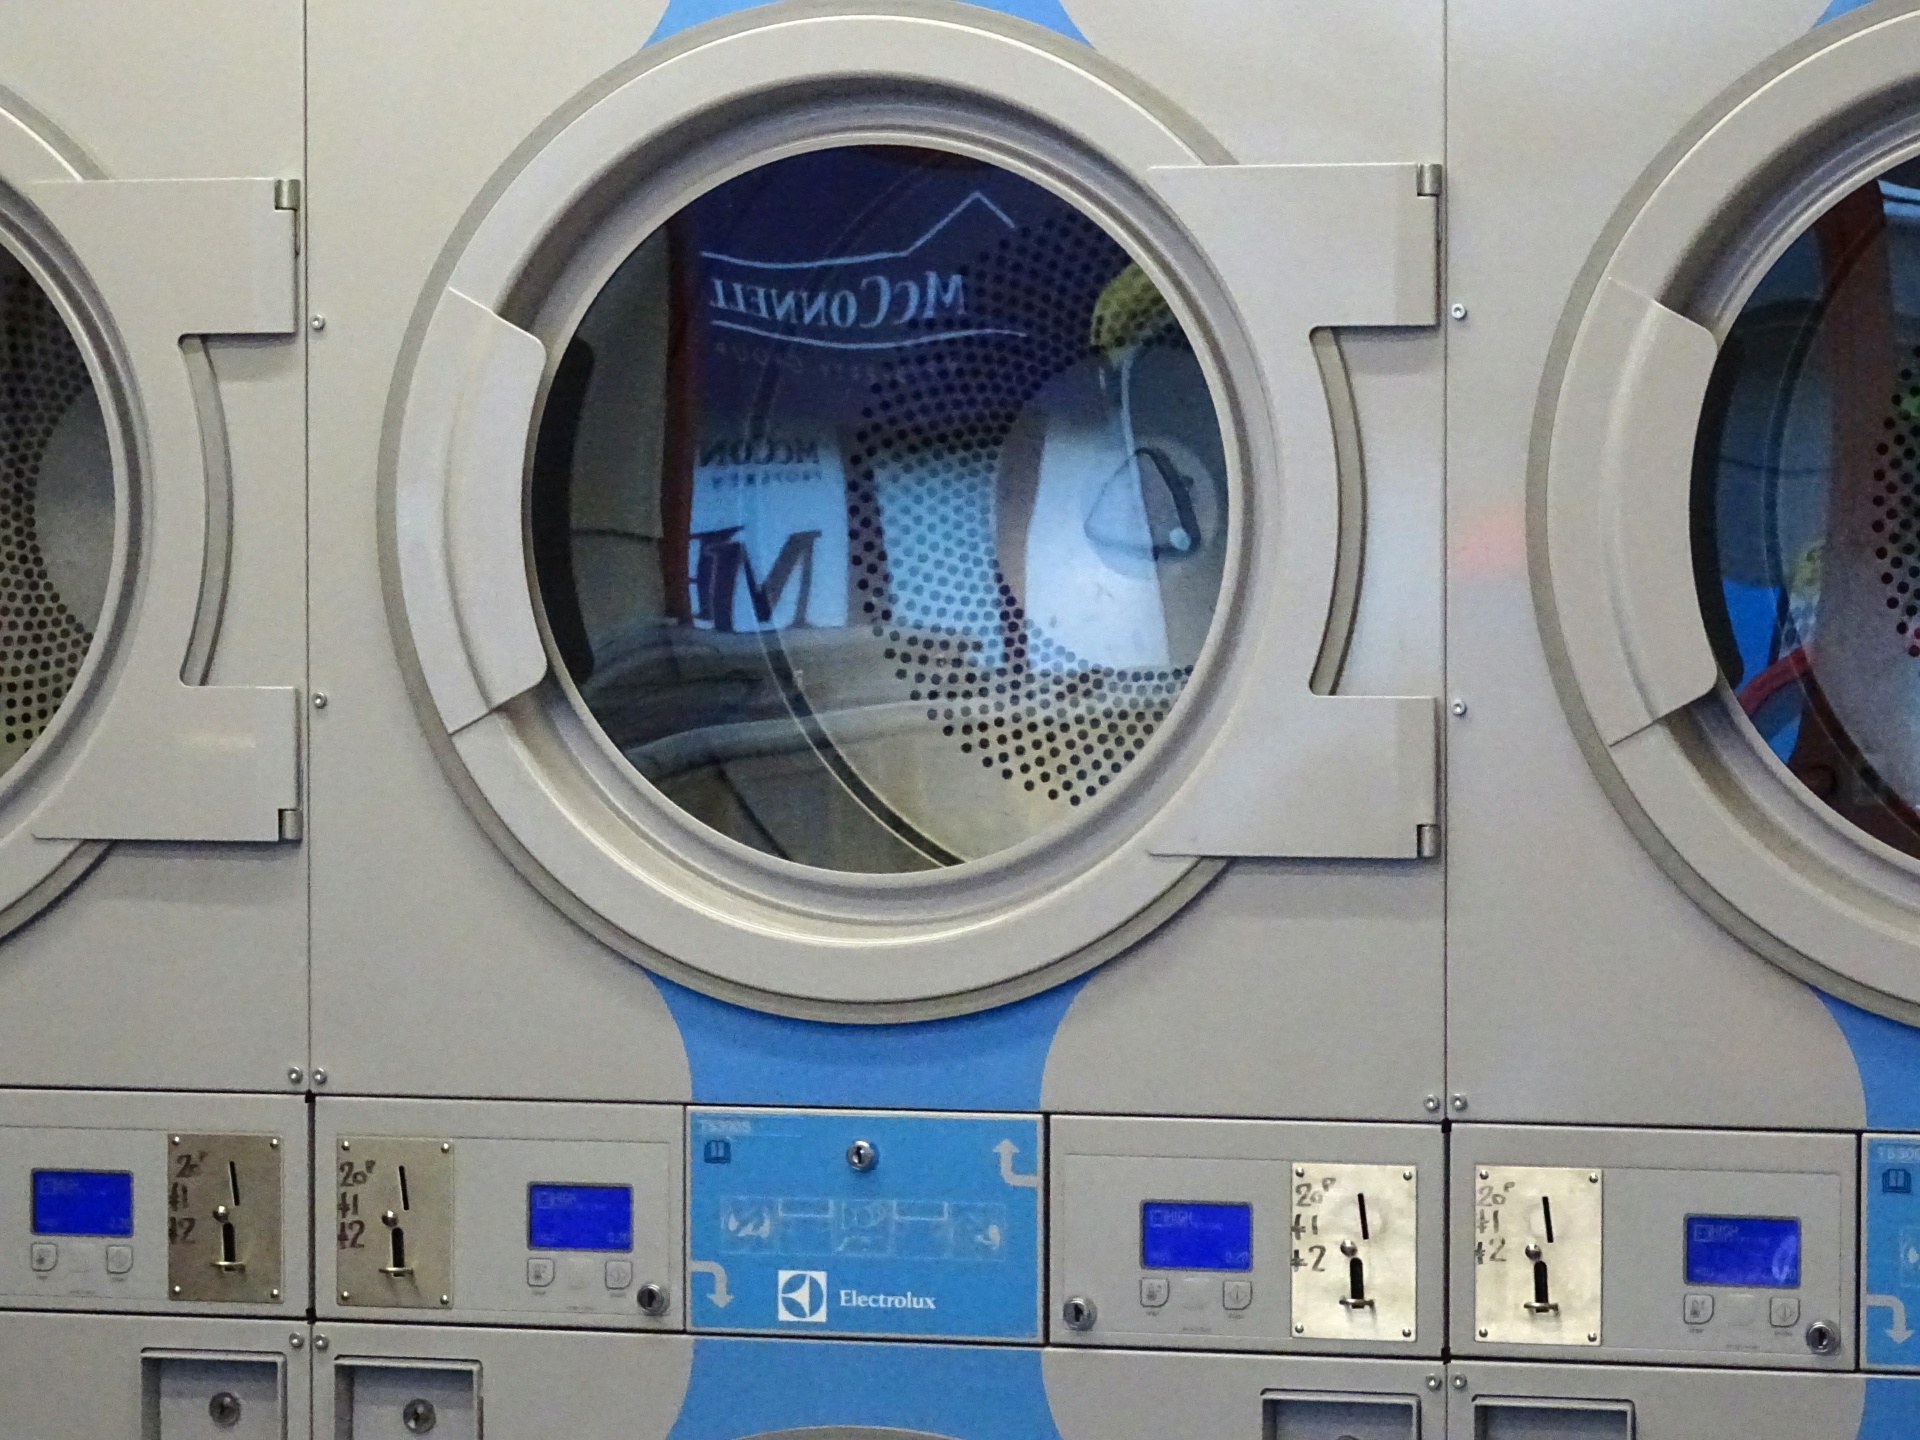 laundrette laundromat laundromats free photo